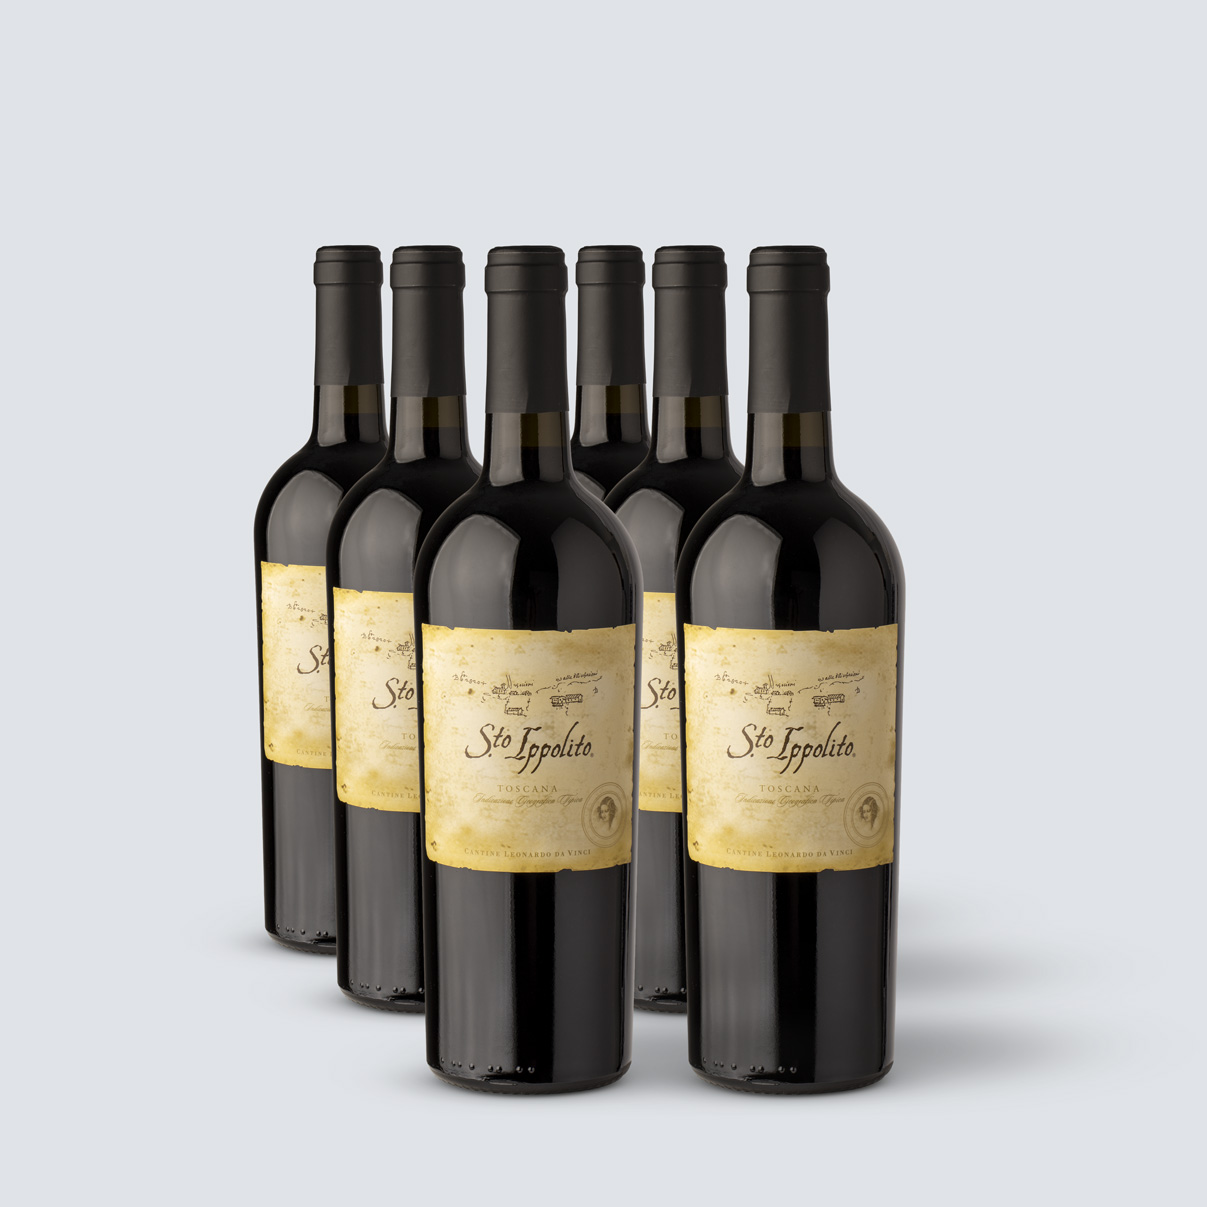 Santo Ippolito Toscana IGT 2013 - Da Vinci (6 bottiglie)